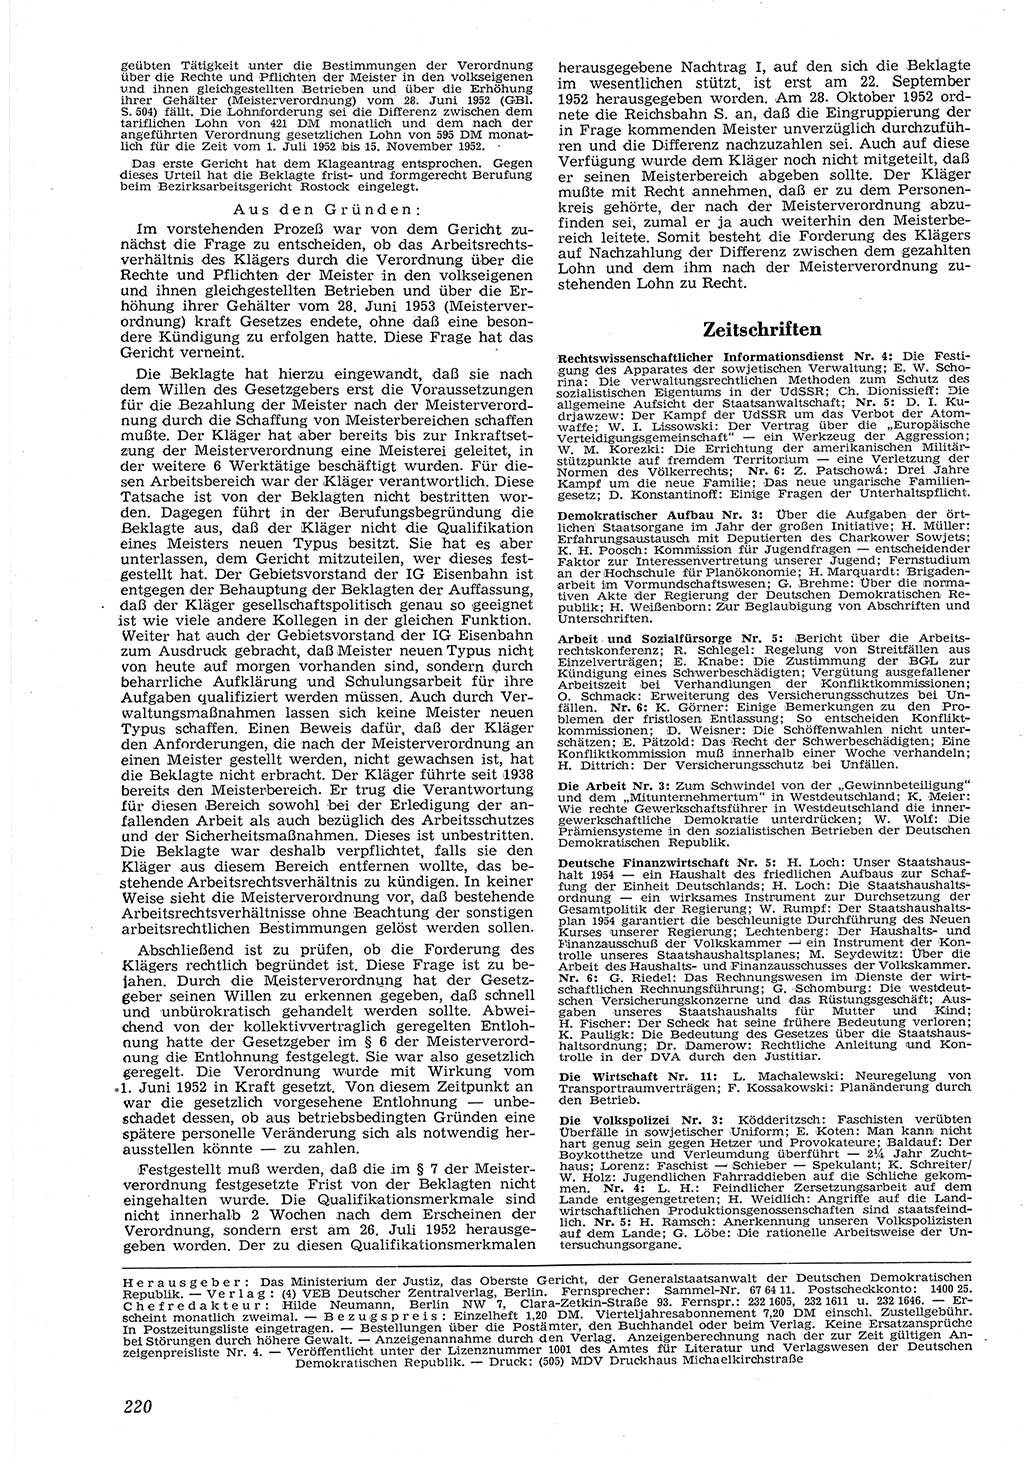 Neue Justiz (NJ), Zeitschrift für Recht und Rechtswissenschaft [Deutsche Demokratische Republik (DDR)], 8. Jahrgang 1954, Seite 220 (NJ DDR 1954, S. 220)